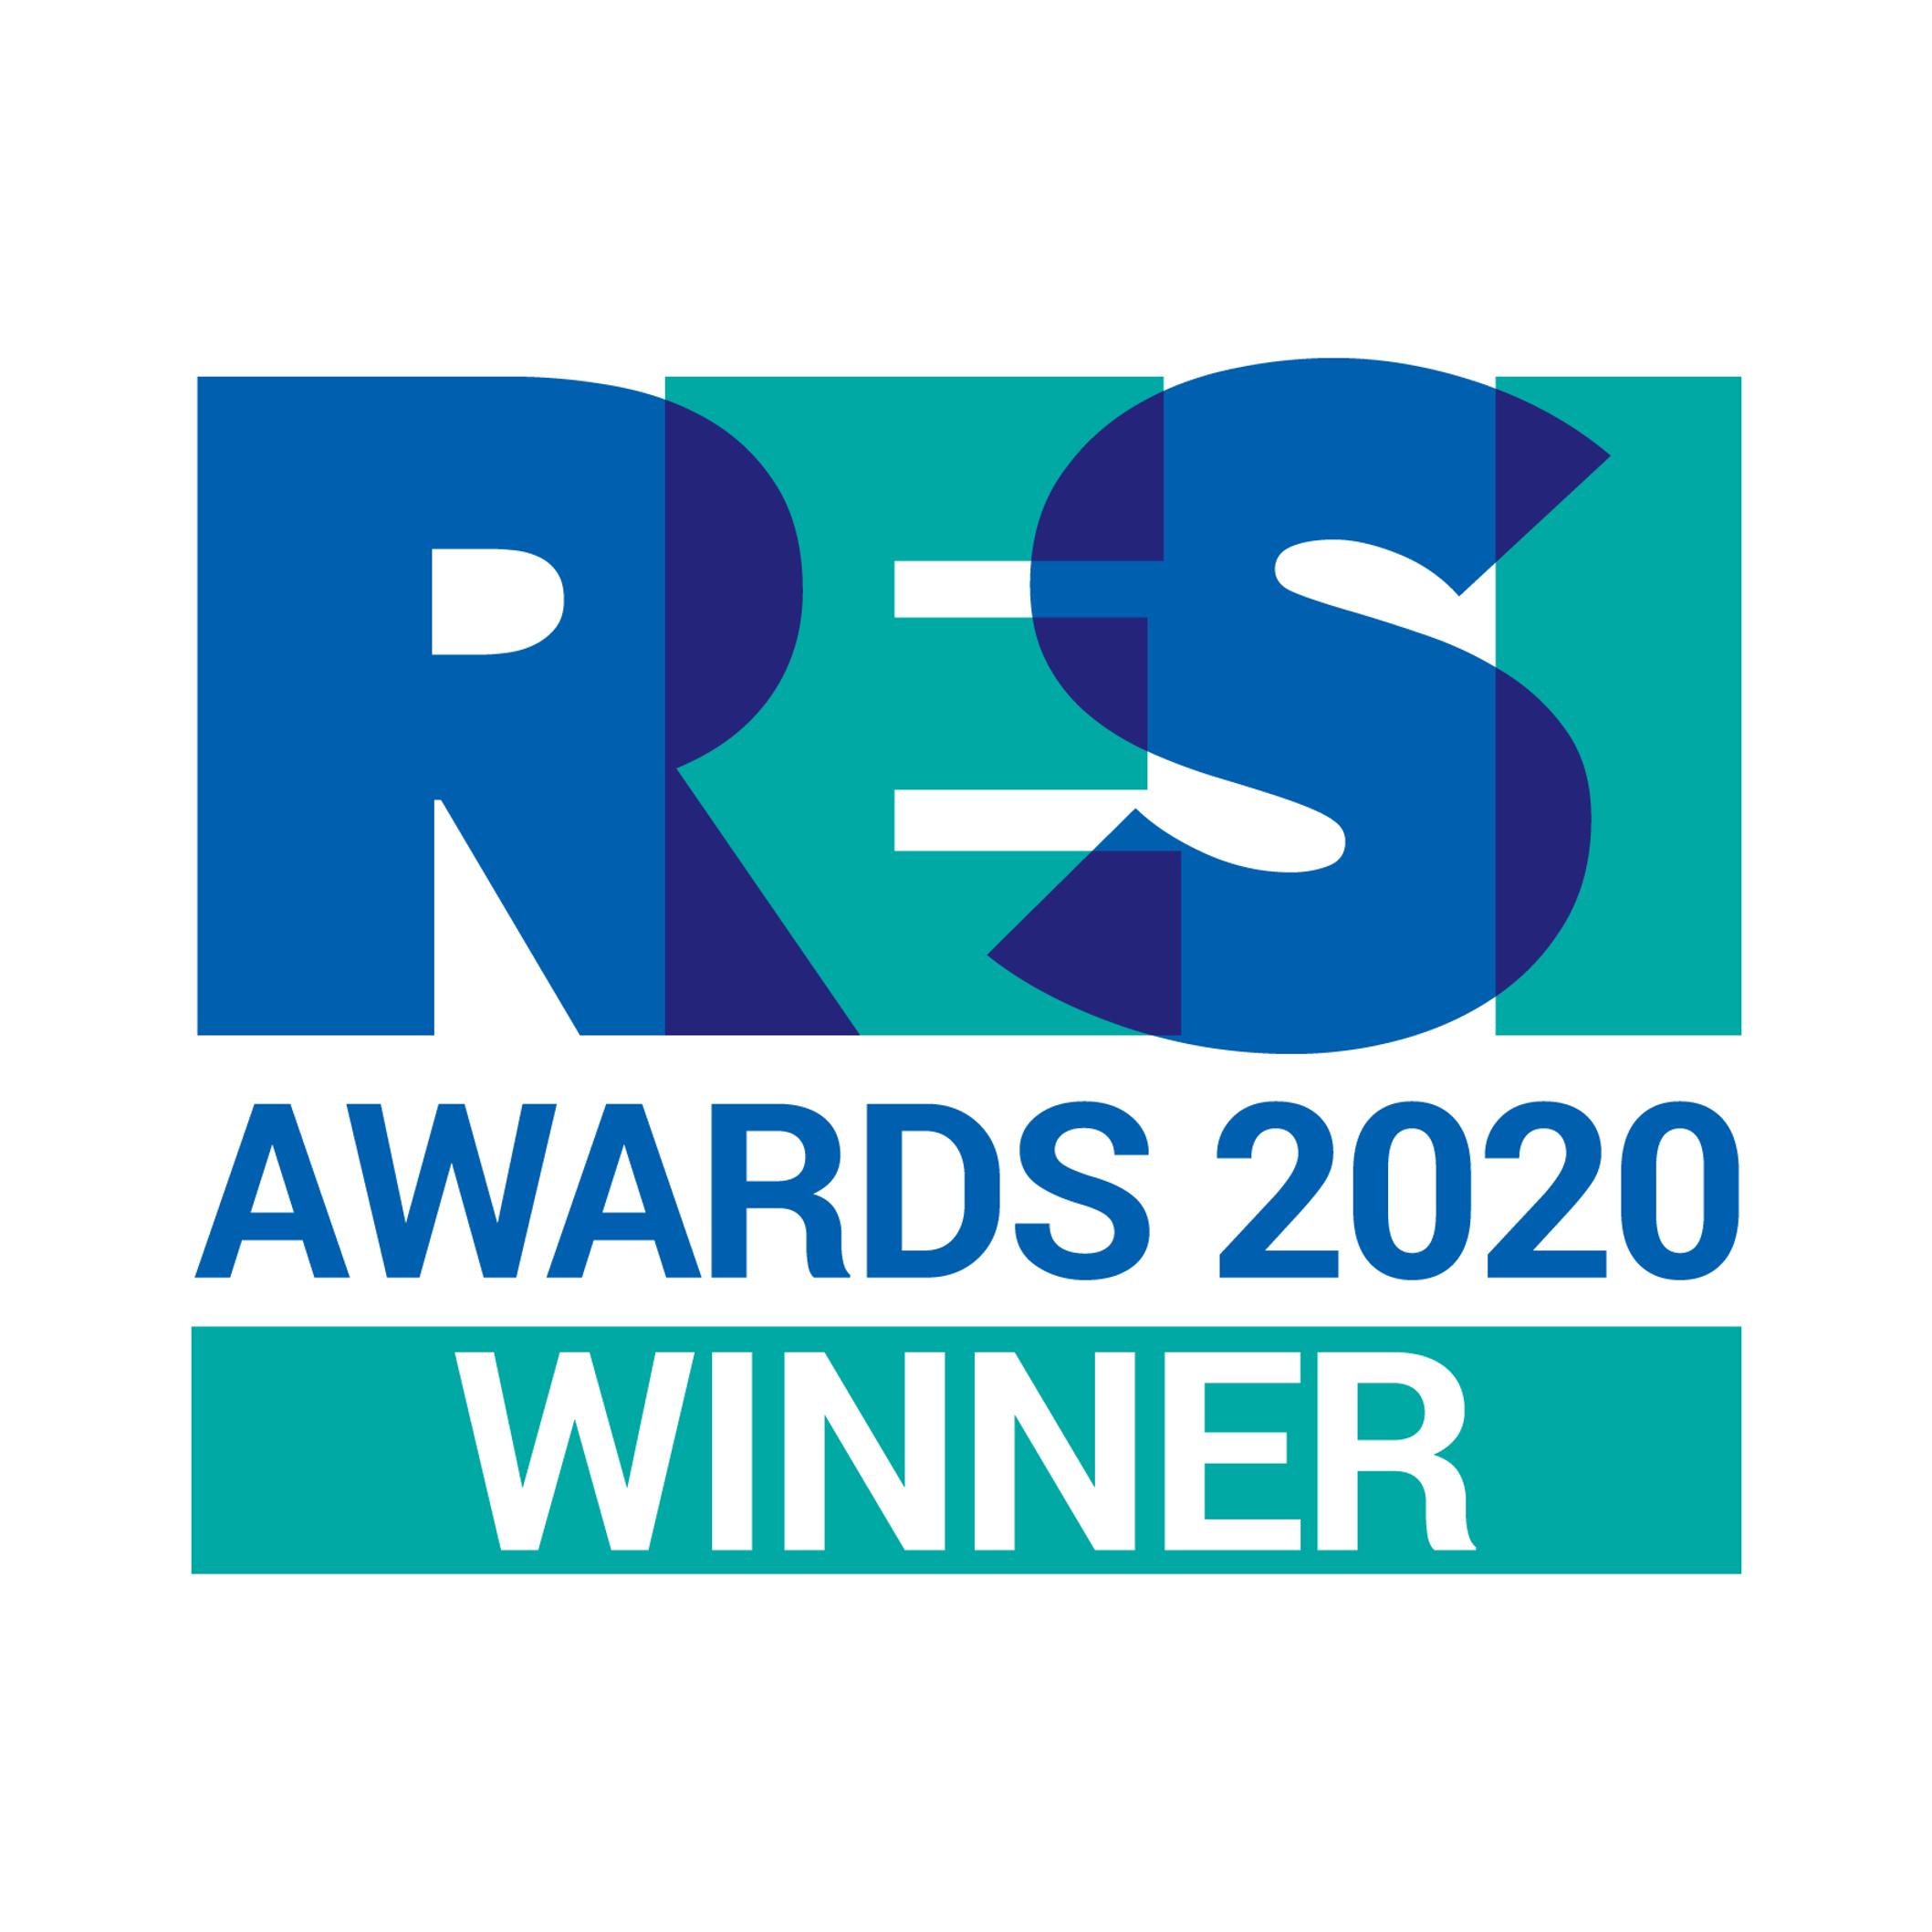 RESI Awards 2020 Image.png